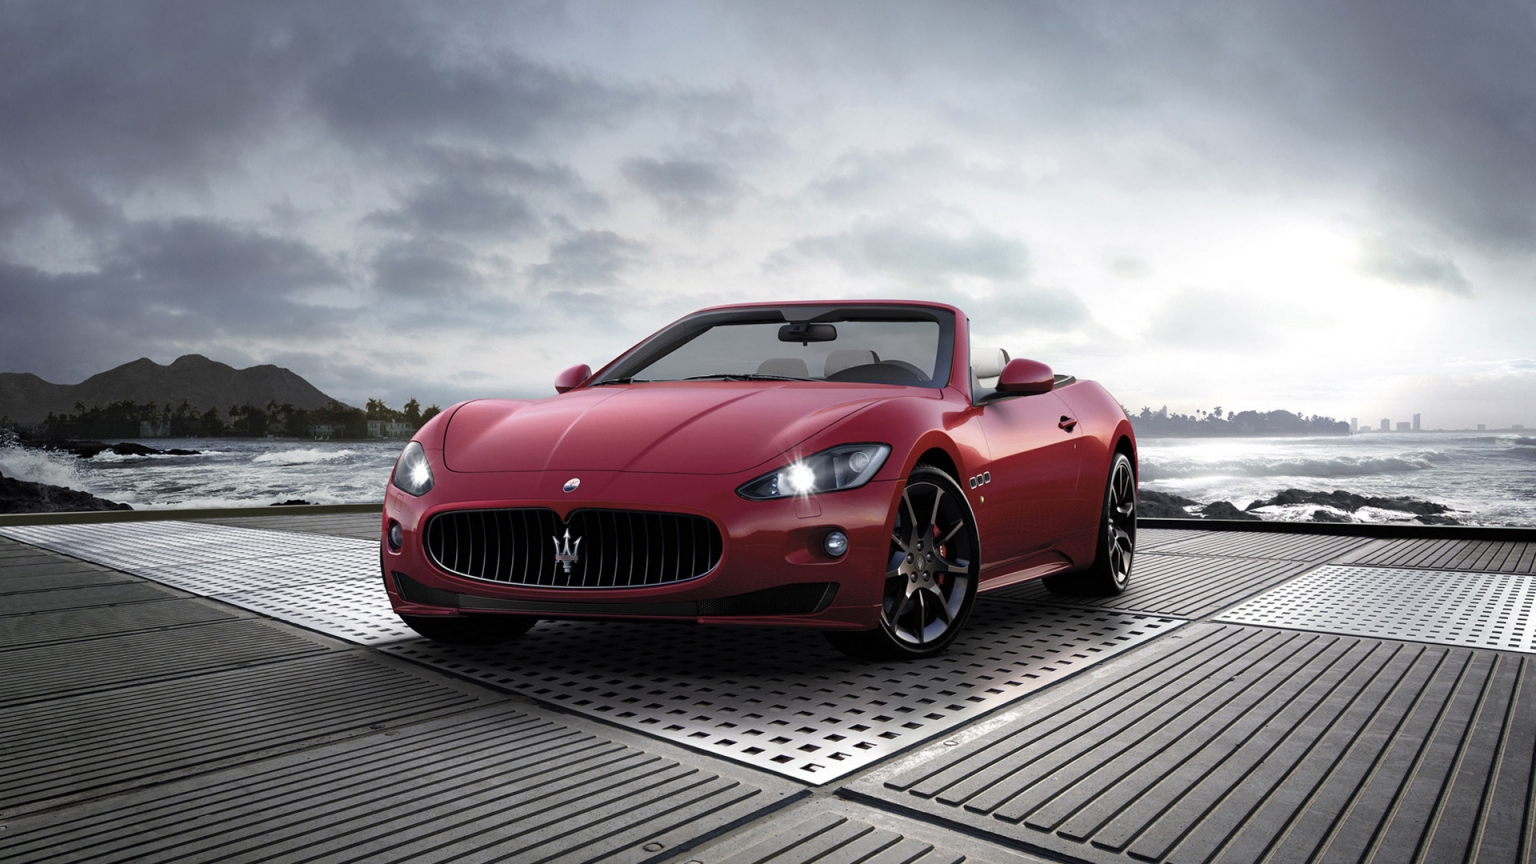 2011 Maserati GranCabrio Sport for 1536 x 864 HDTV resolution